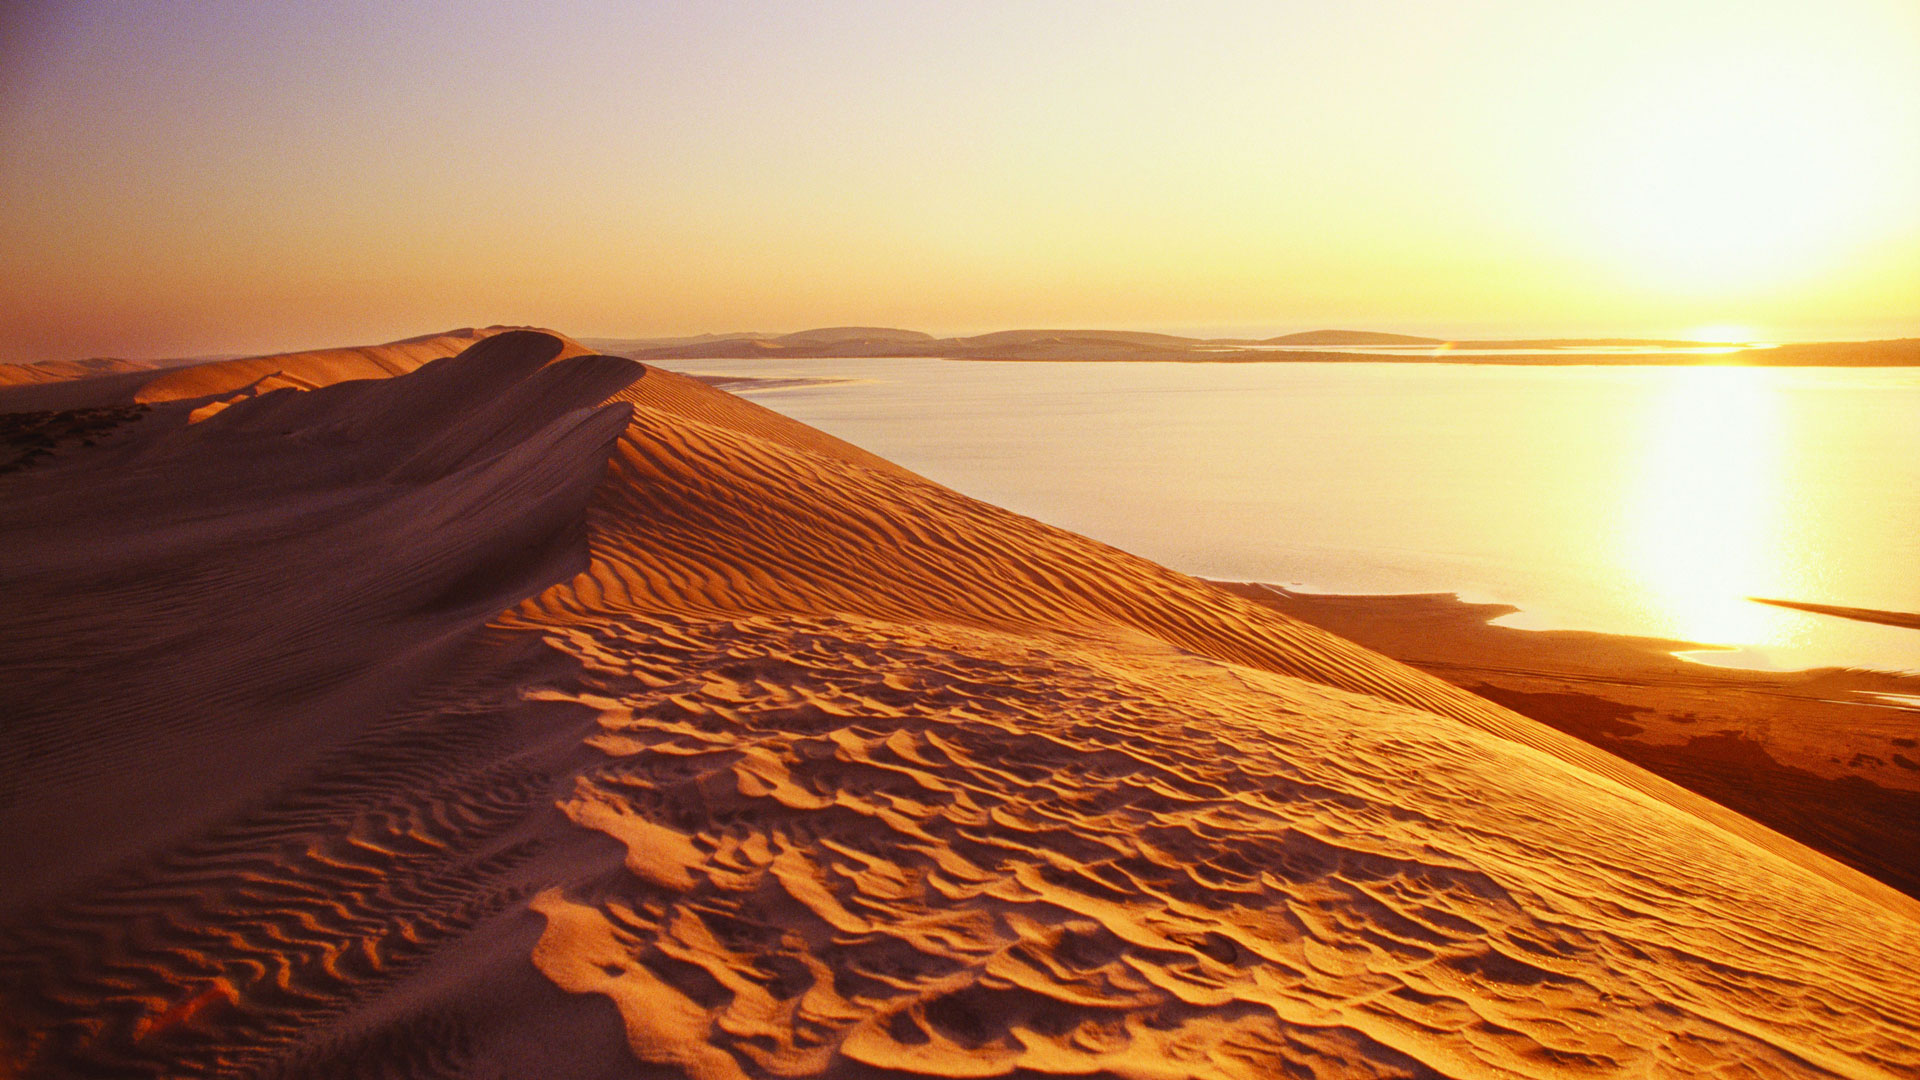 Das Binnenmeer Chaur al-Udaid mitten in der Sandwüste. © Qatar Tourism Authority